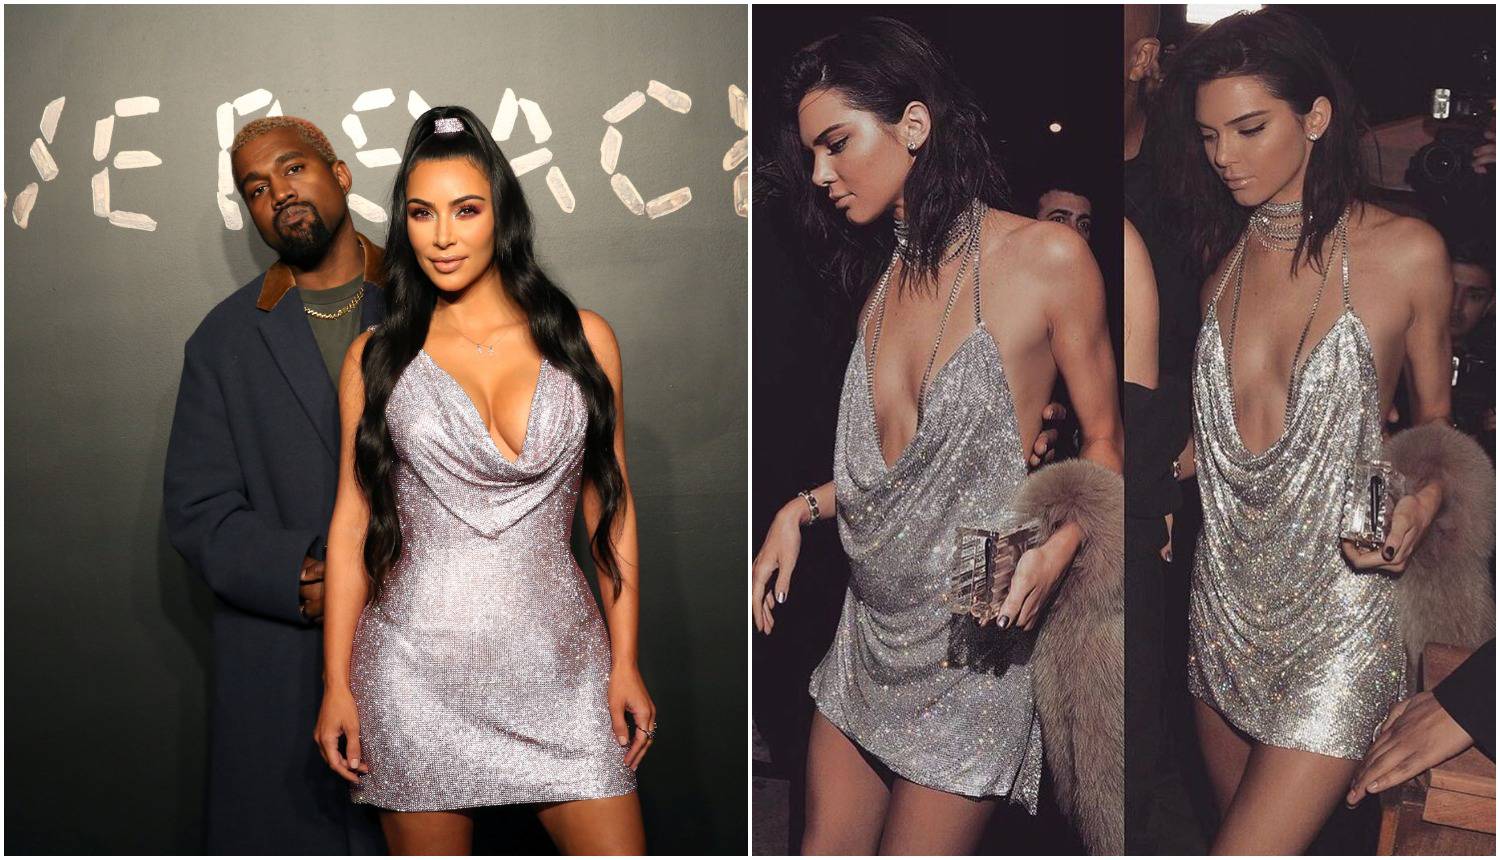 Kojoj bolje stoji? Kim kopirala srebrnu haljinu sestre Kendall